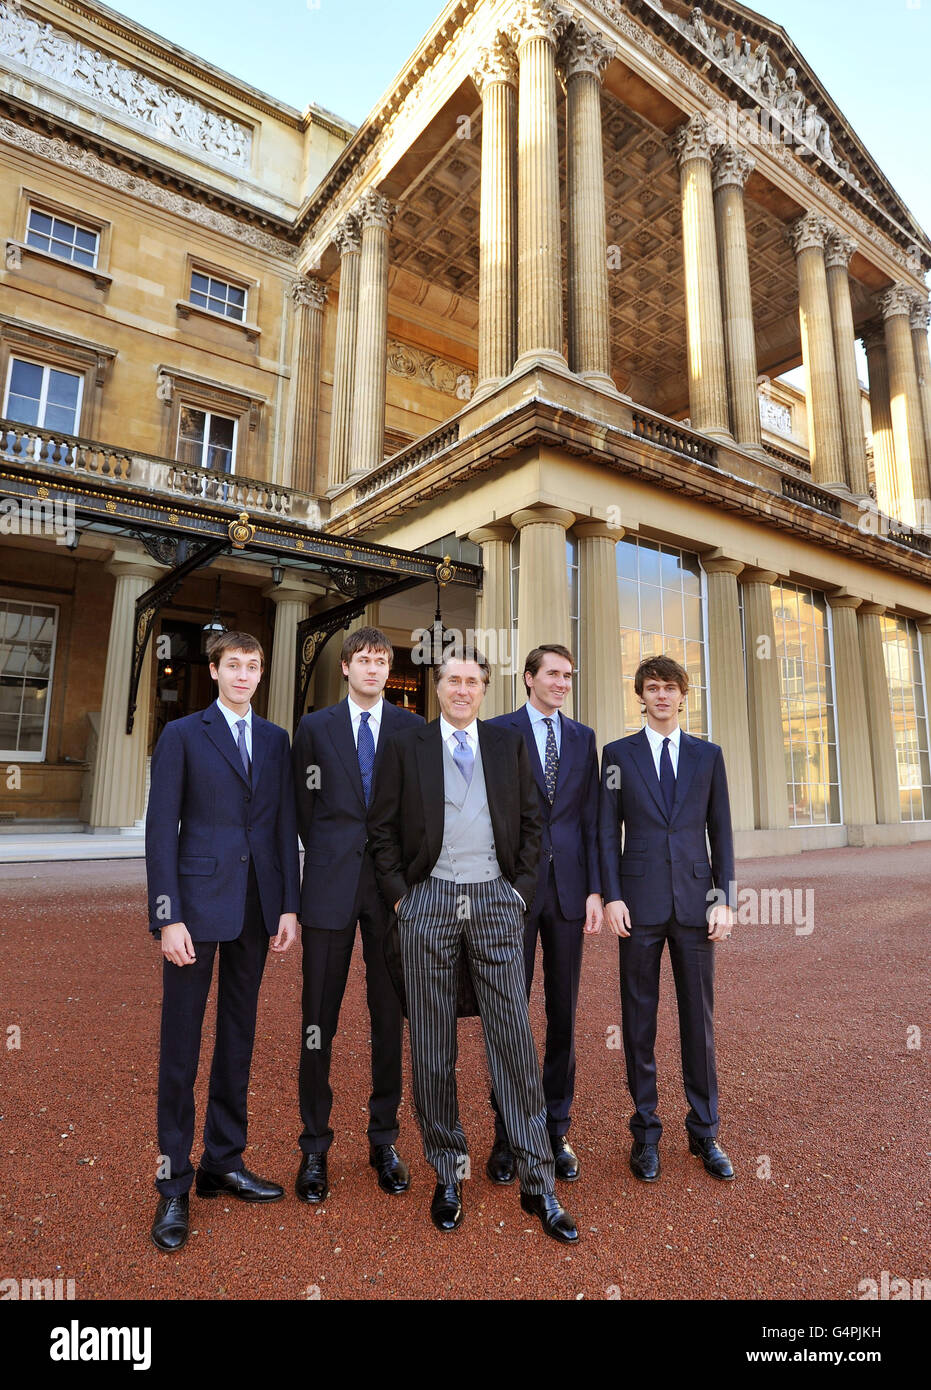 Le chanteur de Roxy Music Bryan Ferry, avec ses quatre fils (de gauche à droite) Merlin, Isaac, Otis et Tara, à leur arrivée pour la cérémonie d'investiture au Palais de Buckingham, dans le centre de Londres, où il recevra sa médaille du commandant de l'Empire britannique (CBE) de la Reine. Banque D'Images